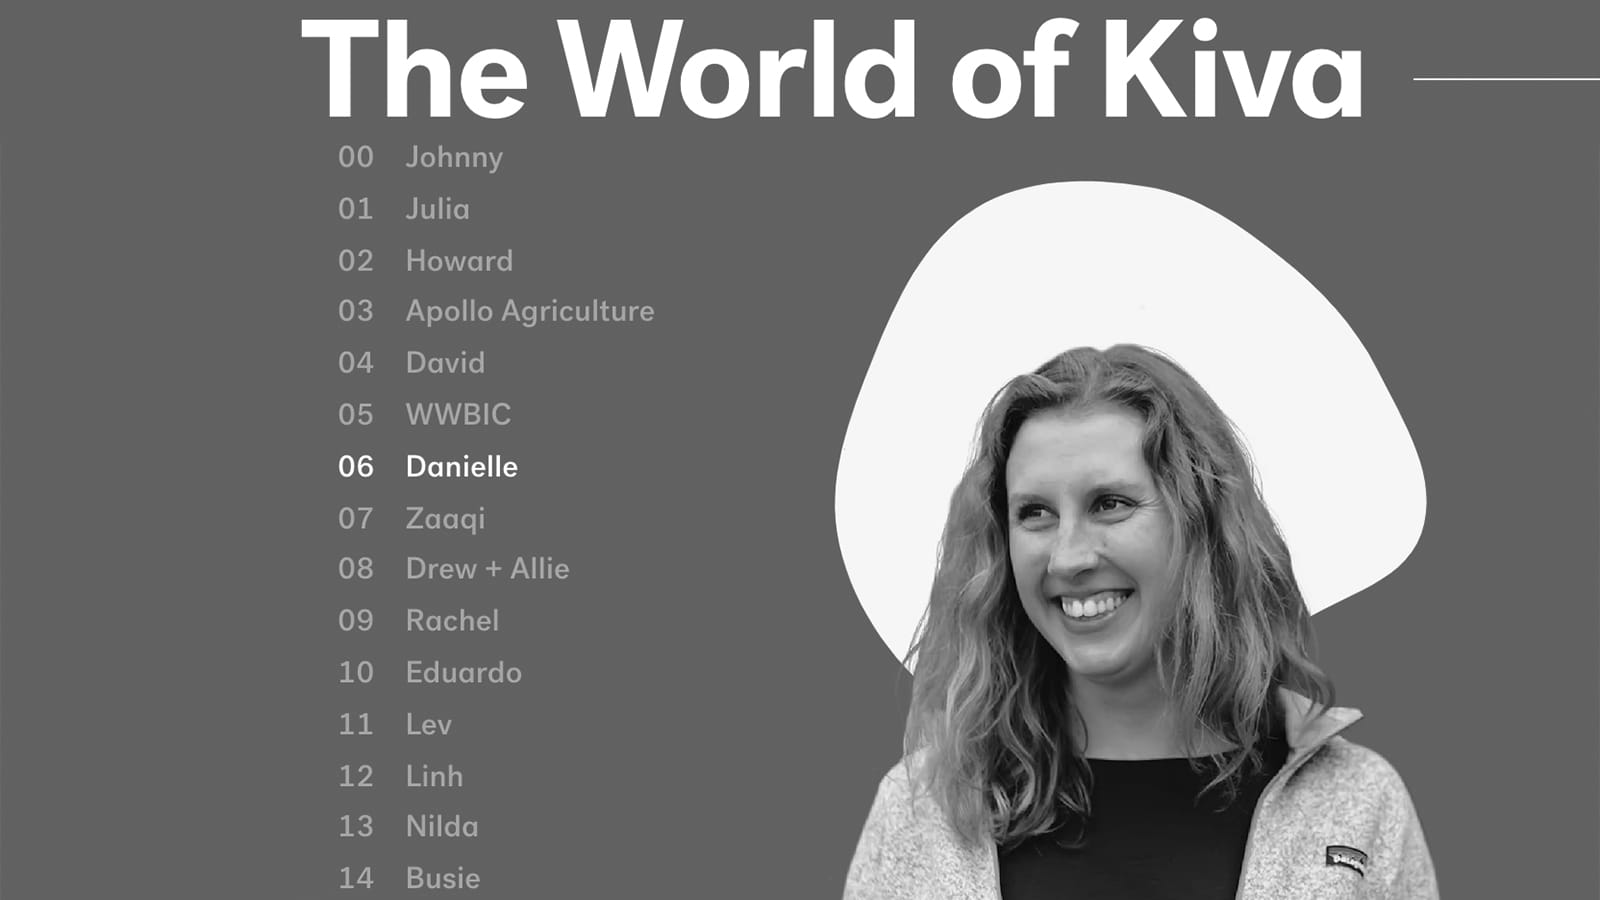 15 Years of Kiva